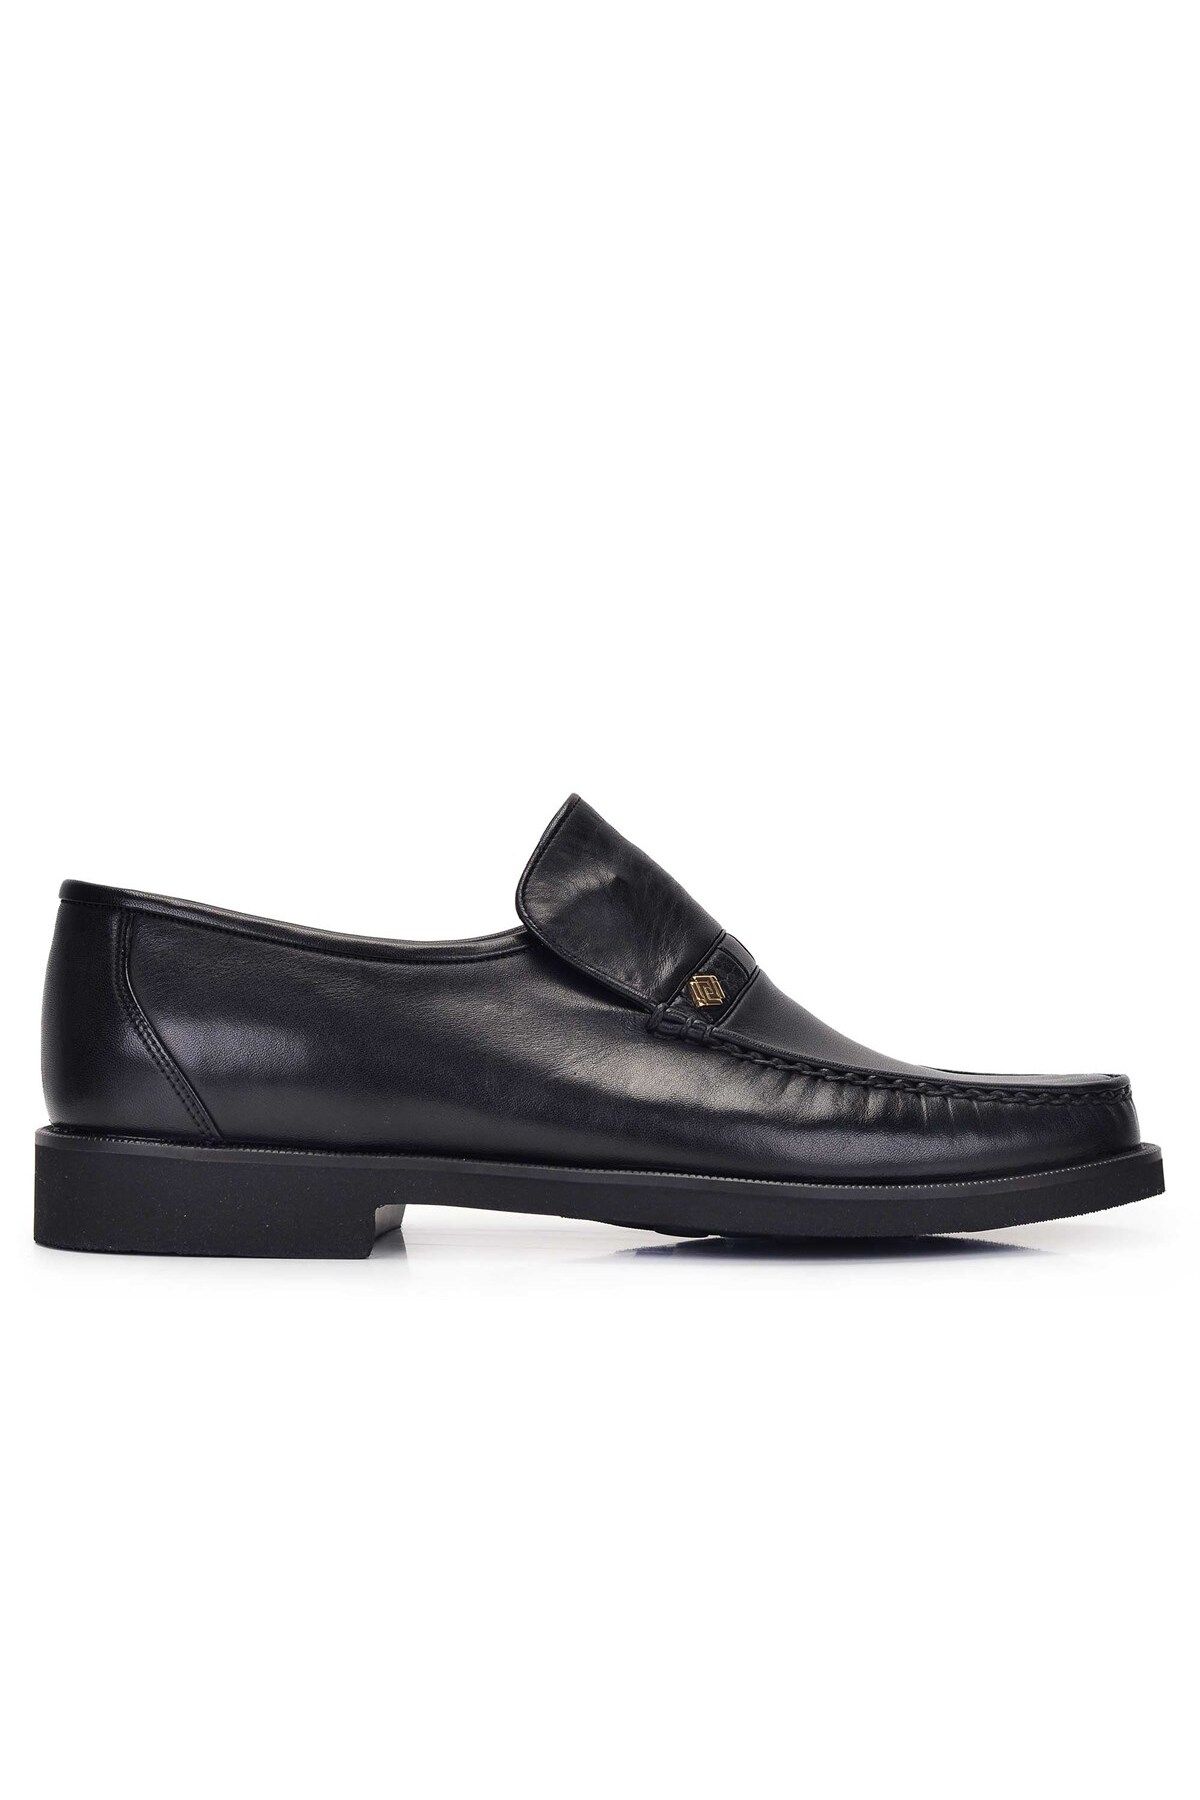 Nevzat Onay Siyah Günlük Loafer Erkek Ayakkabı -11279-